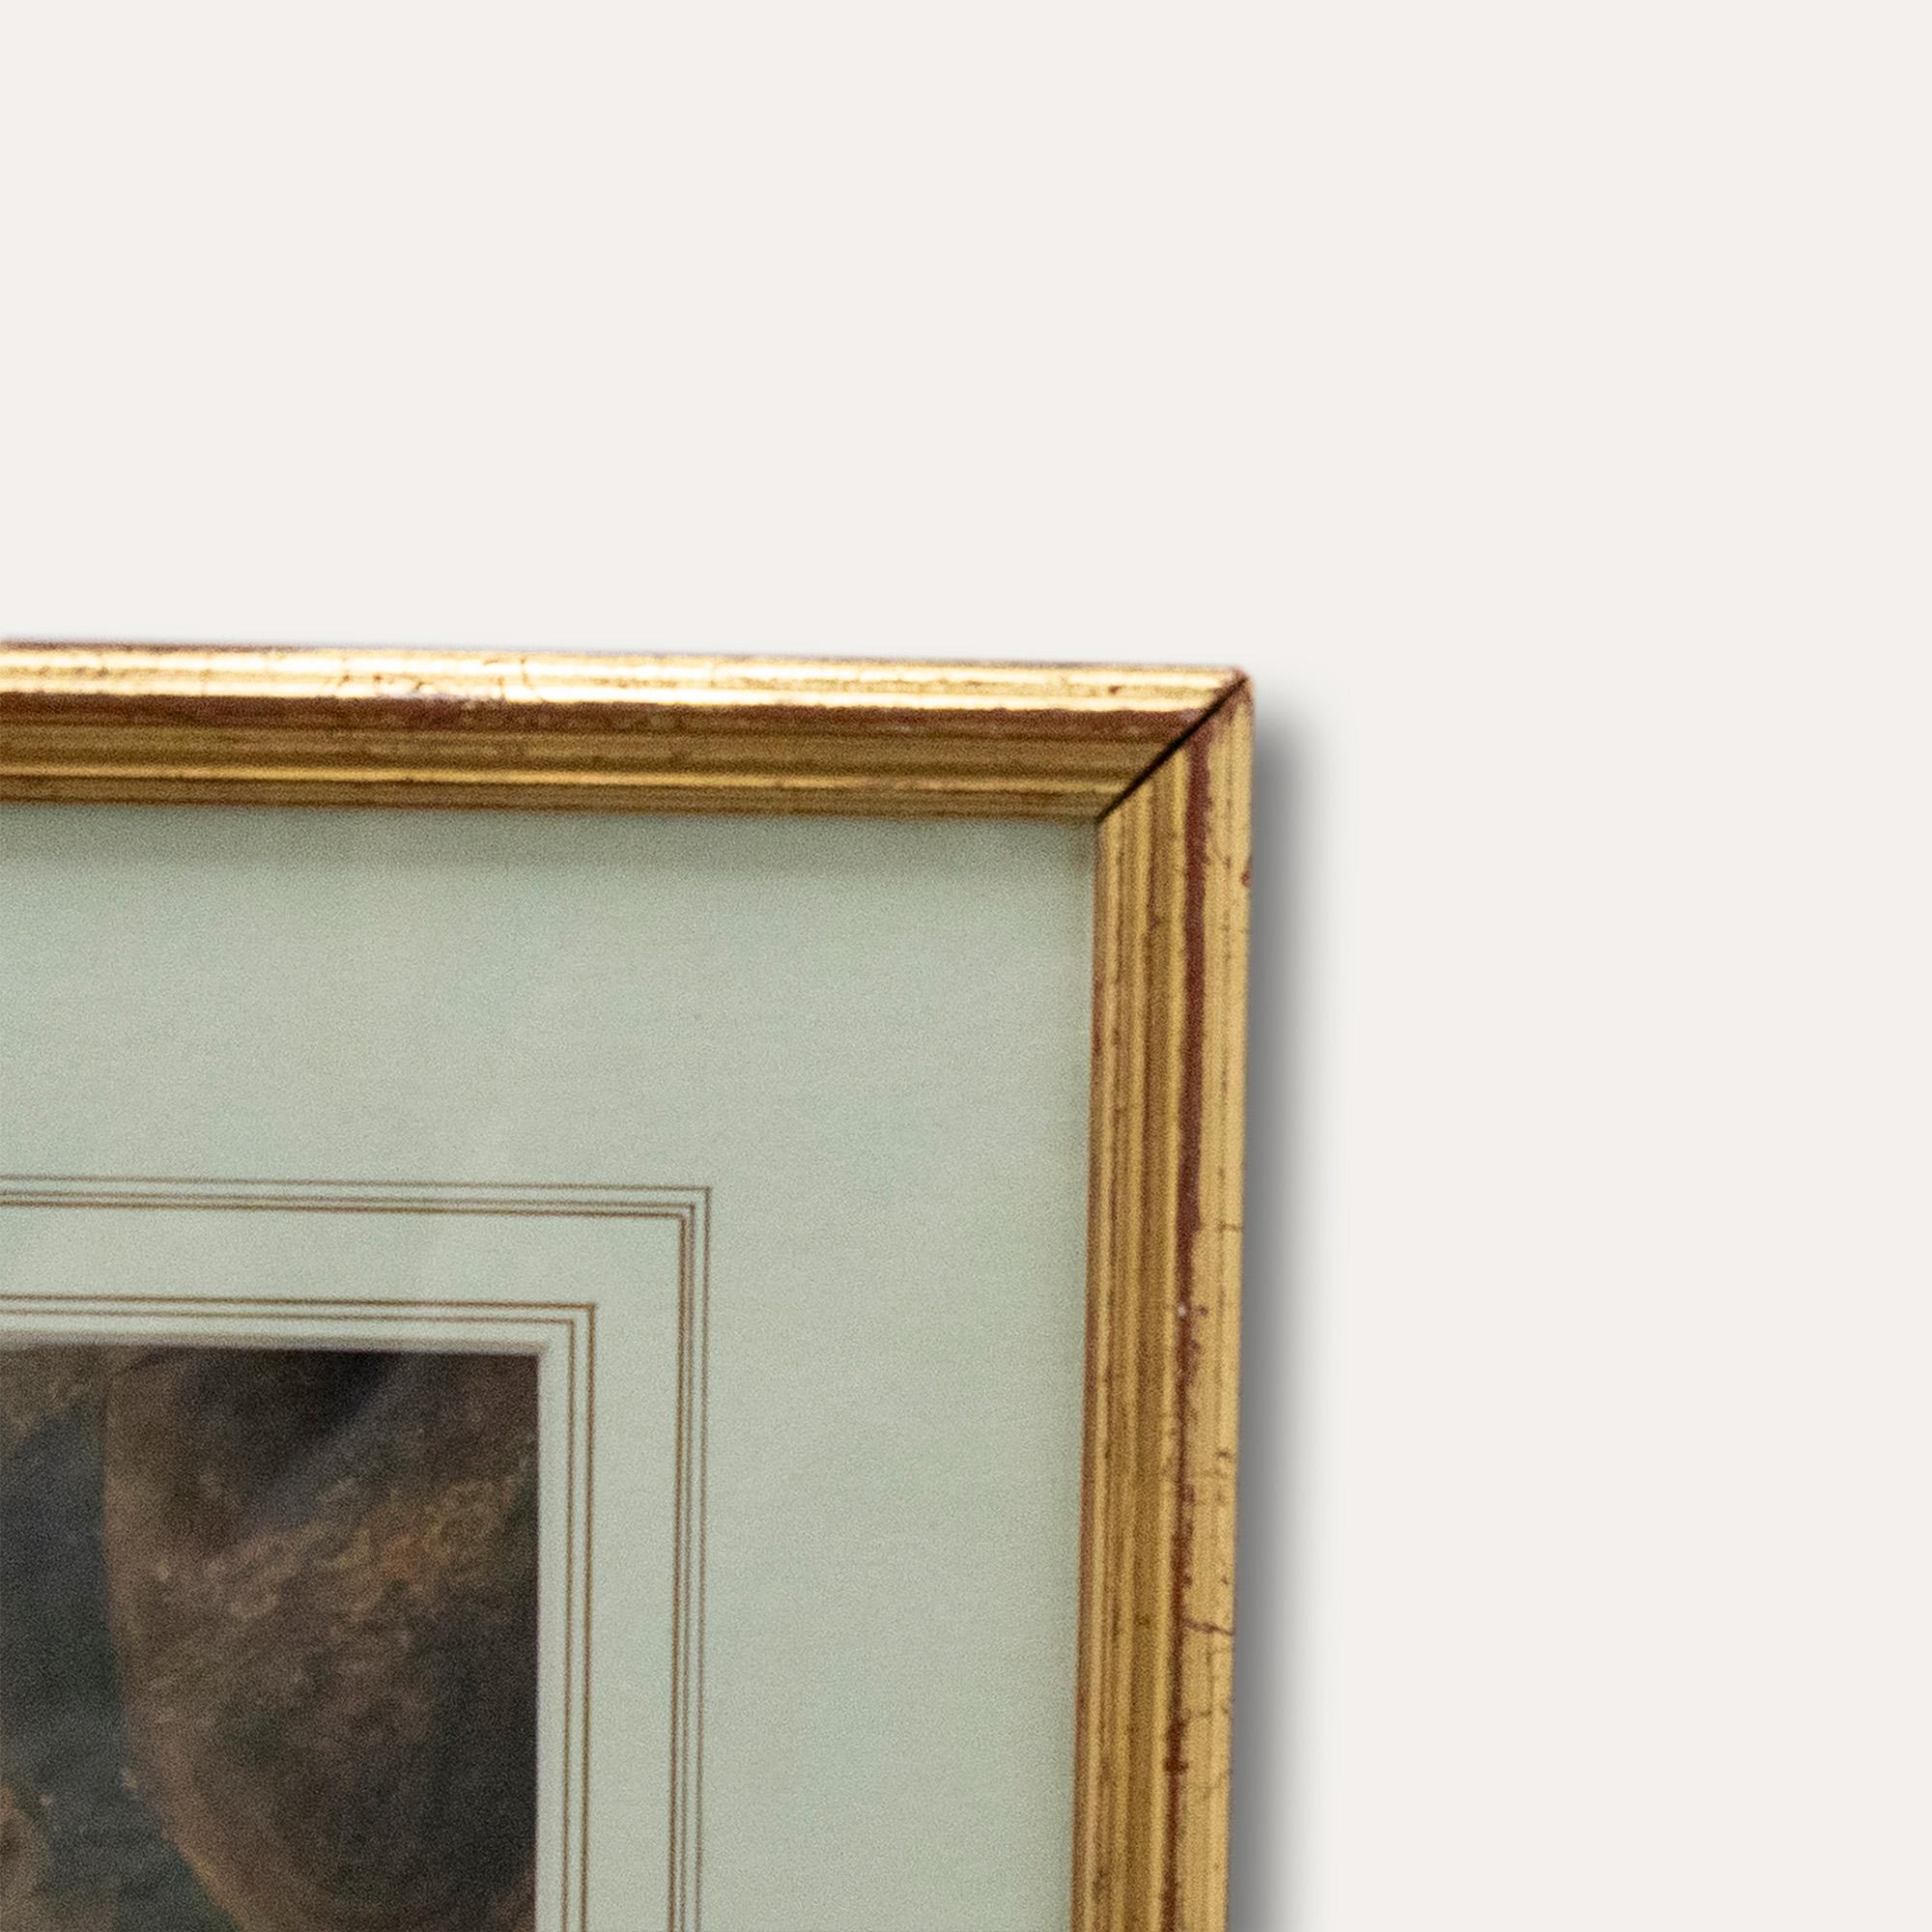 Ein äußerst charmantes englisches Schulporträt eines kleinen Jungen, der sich an eine Gartenurne lehnt. Gut präsentiert in einem eleganten Rahmen in Goldoptik mit Waschmaschinenhalterung. Signiert mit den Initialen R.C. und datiert 1809, wie auf dem